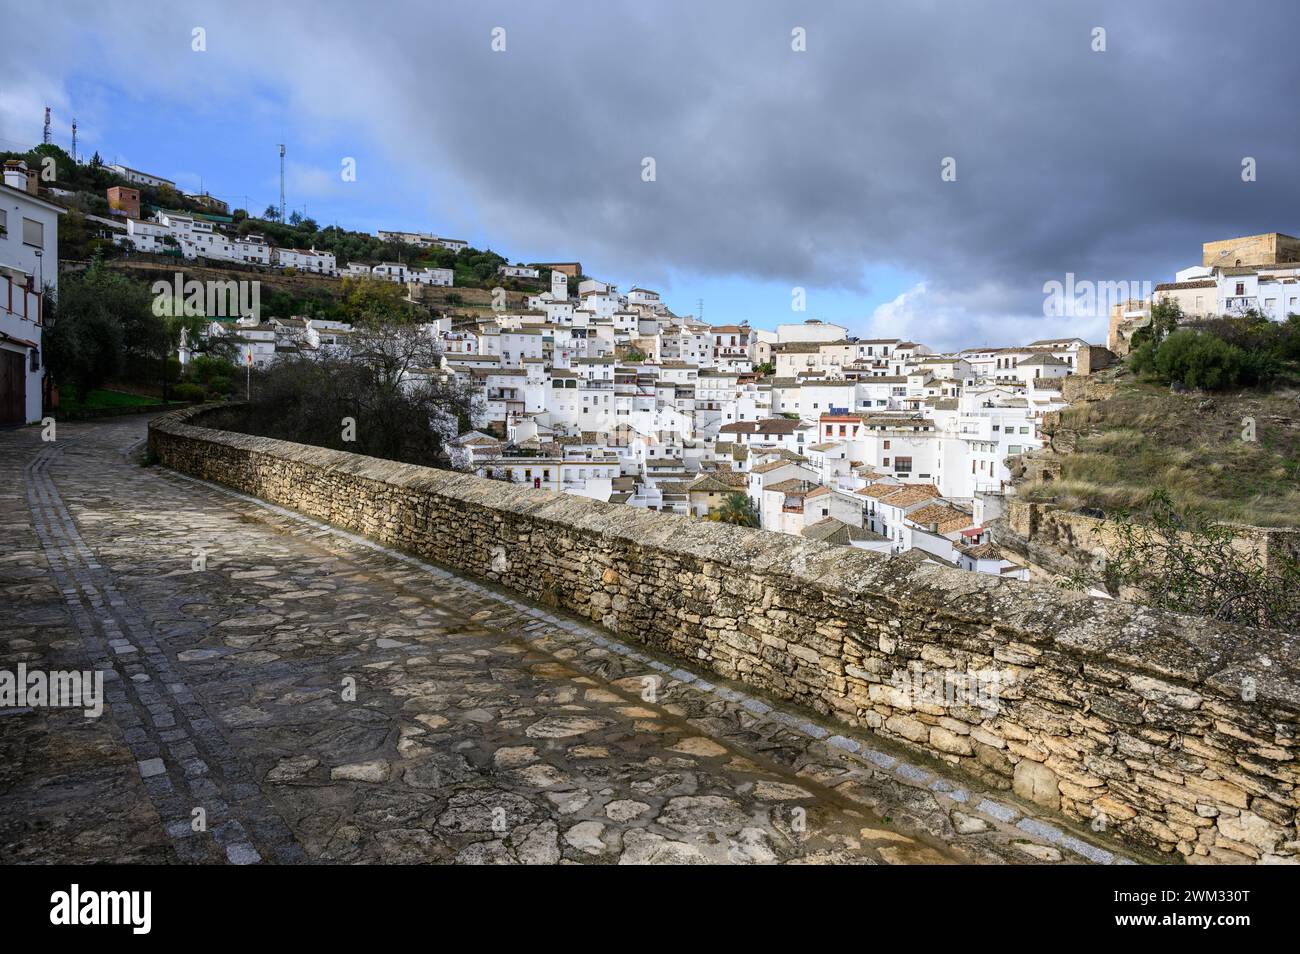 Fantastique photo du beau village blanc de Setenil de las Bodegas, Cadix, Espagne. Banque D'Images